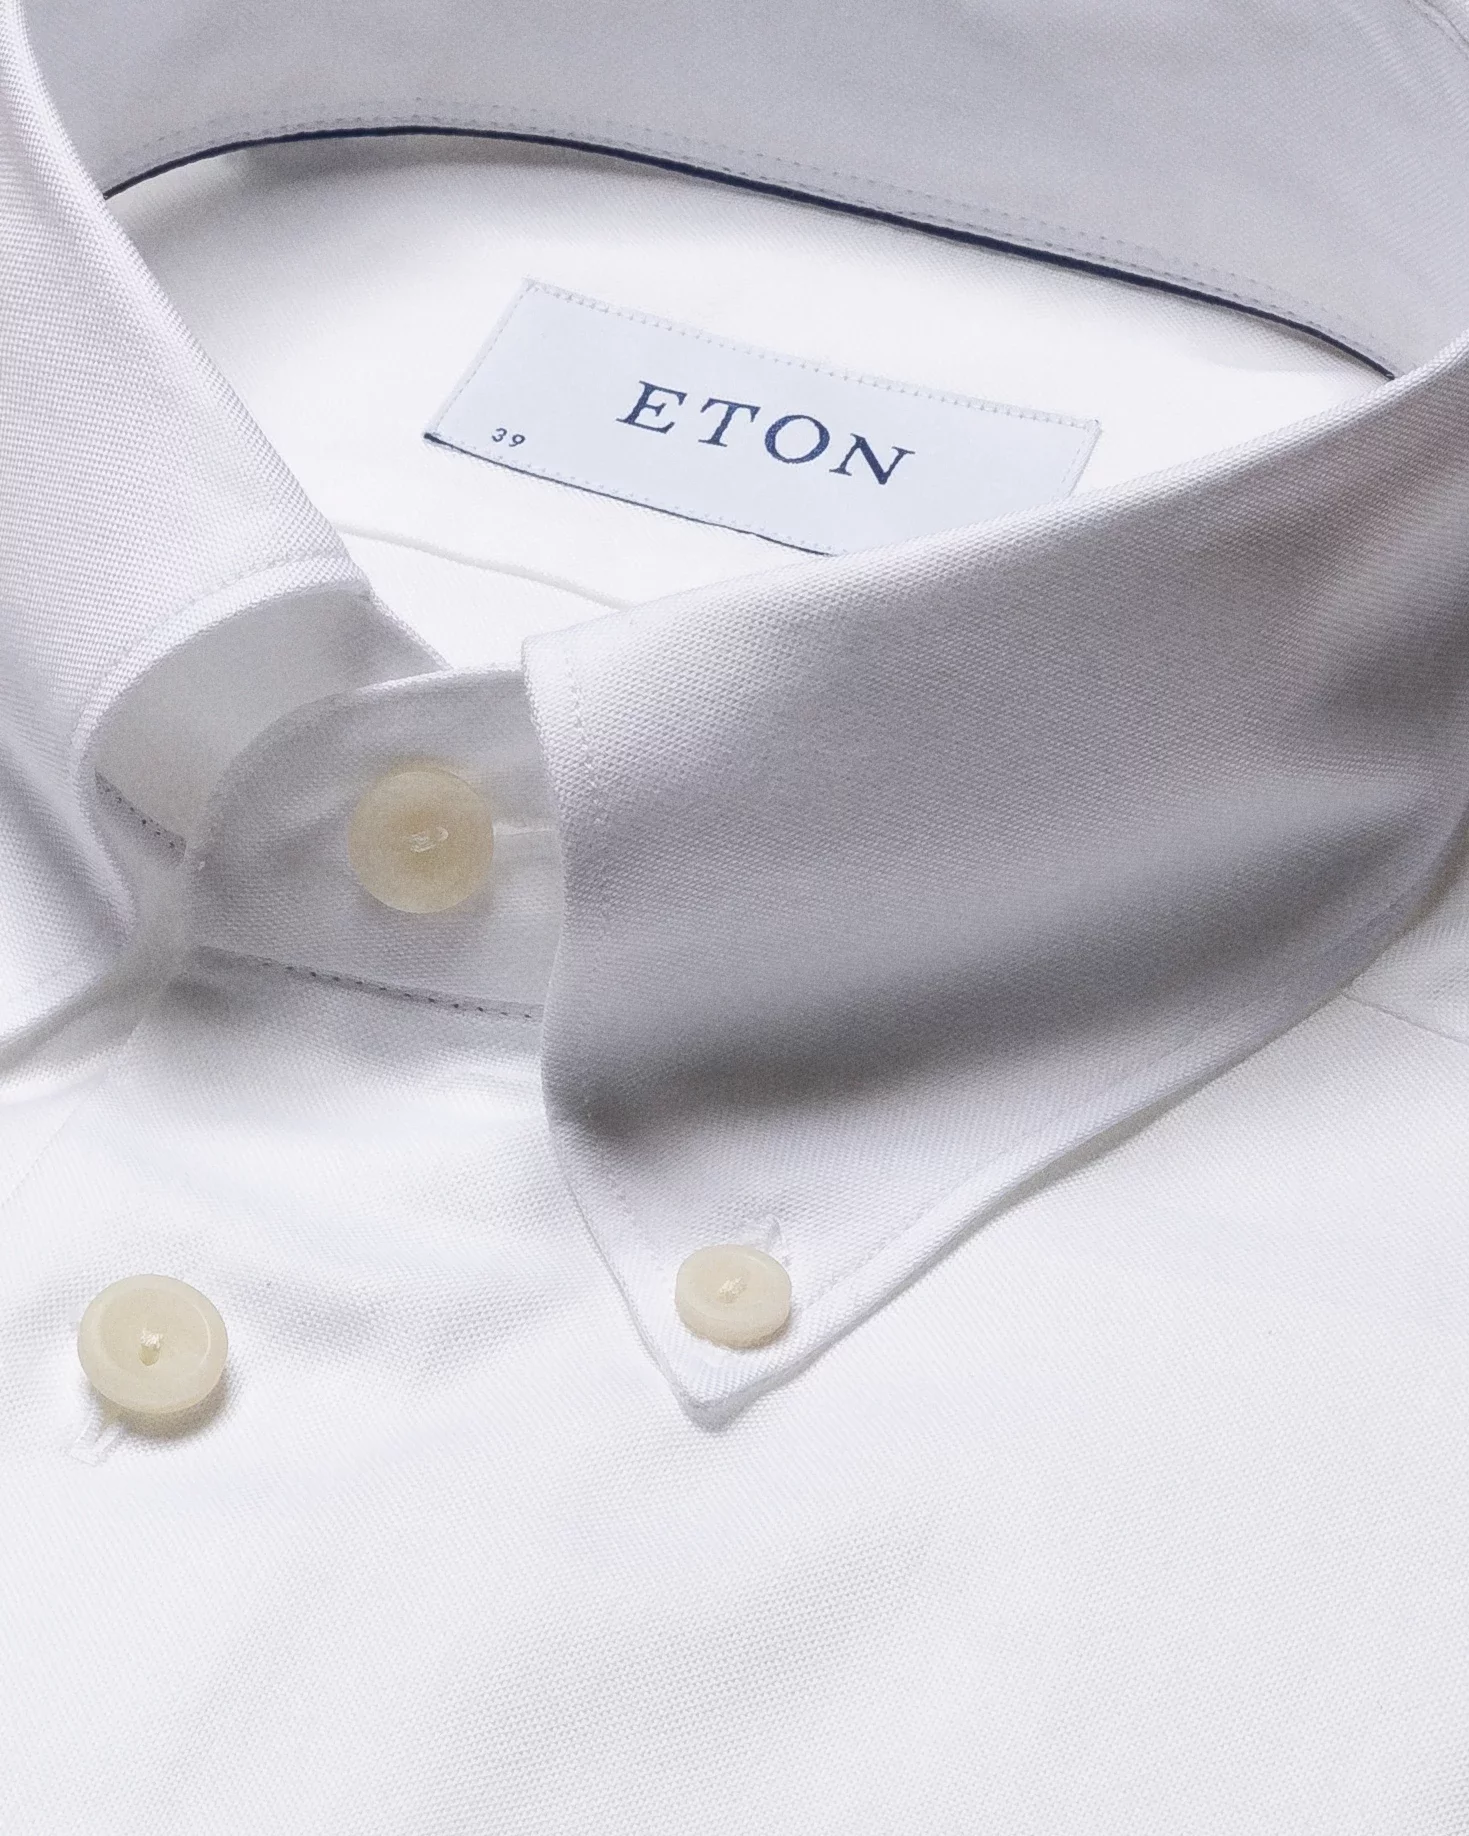 Eton - white wrinkle free oxford shirt